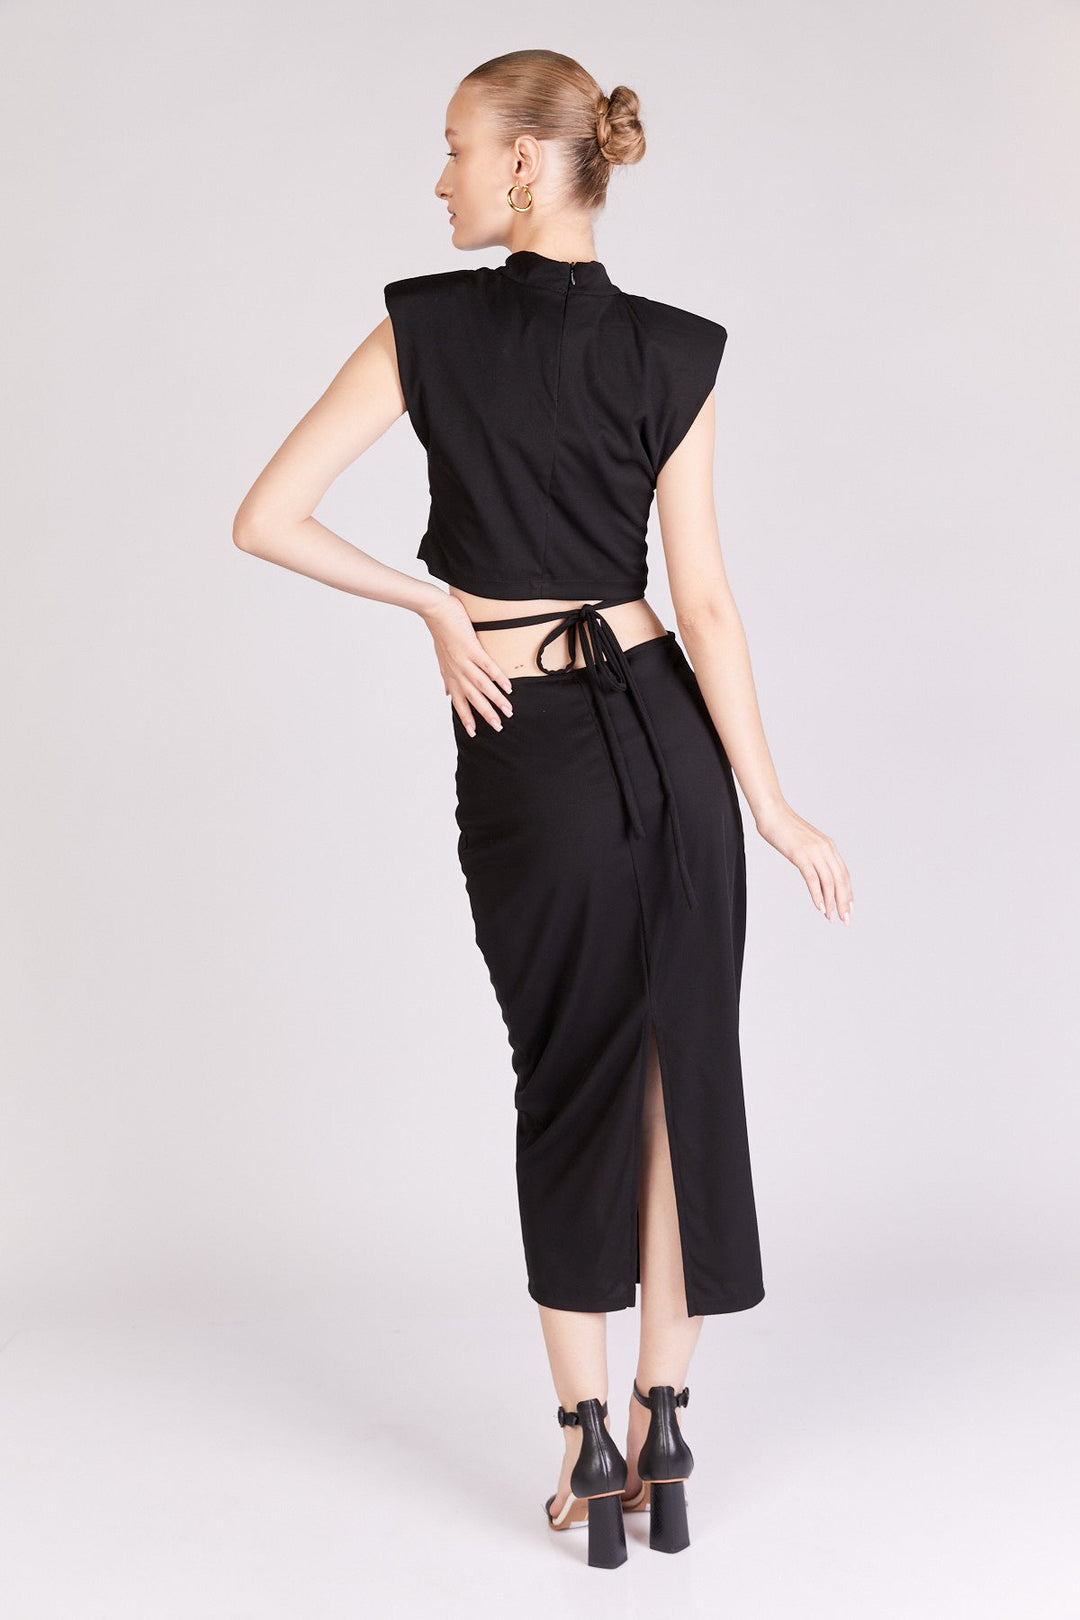 חצאית לוטי בצבע שחור - Dana Sidi